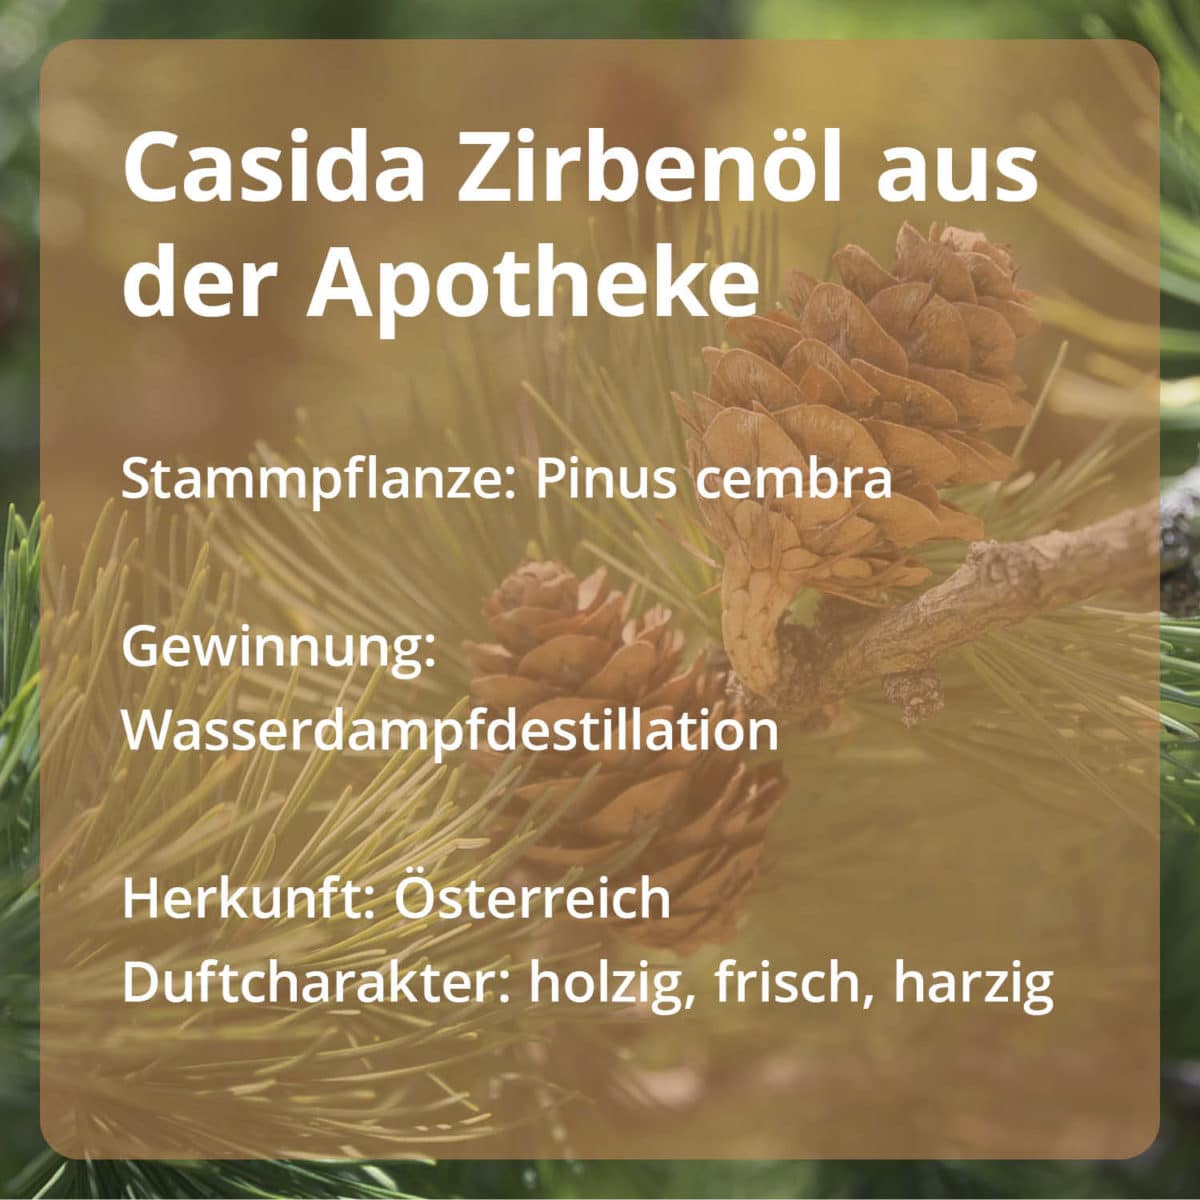 Casida Stone Pine Oil Pinus cembra naturrein – 10 ml 16486743 PZN Apotheke Zirbelkiefernöl ätherische Öle Diffuser3